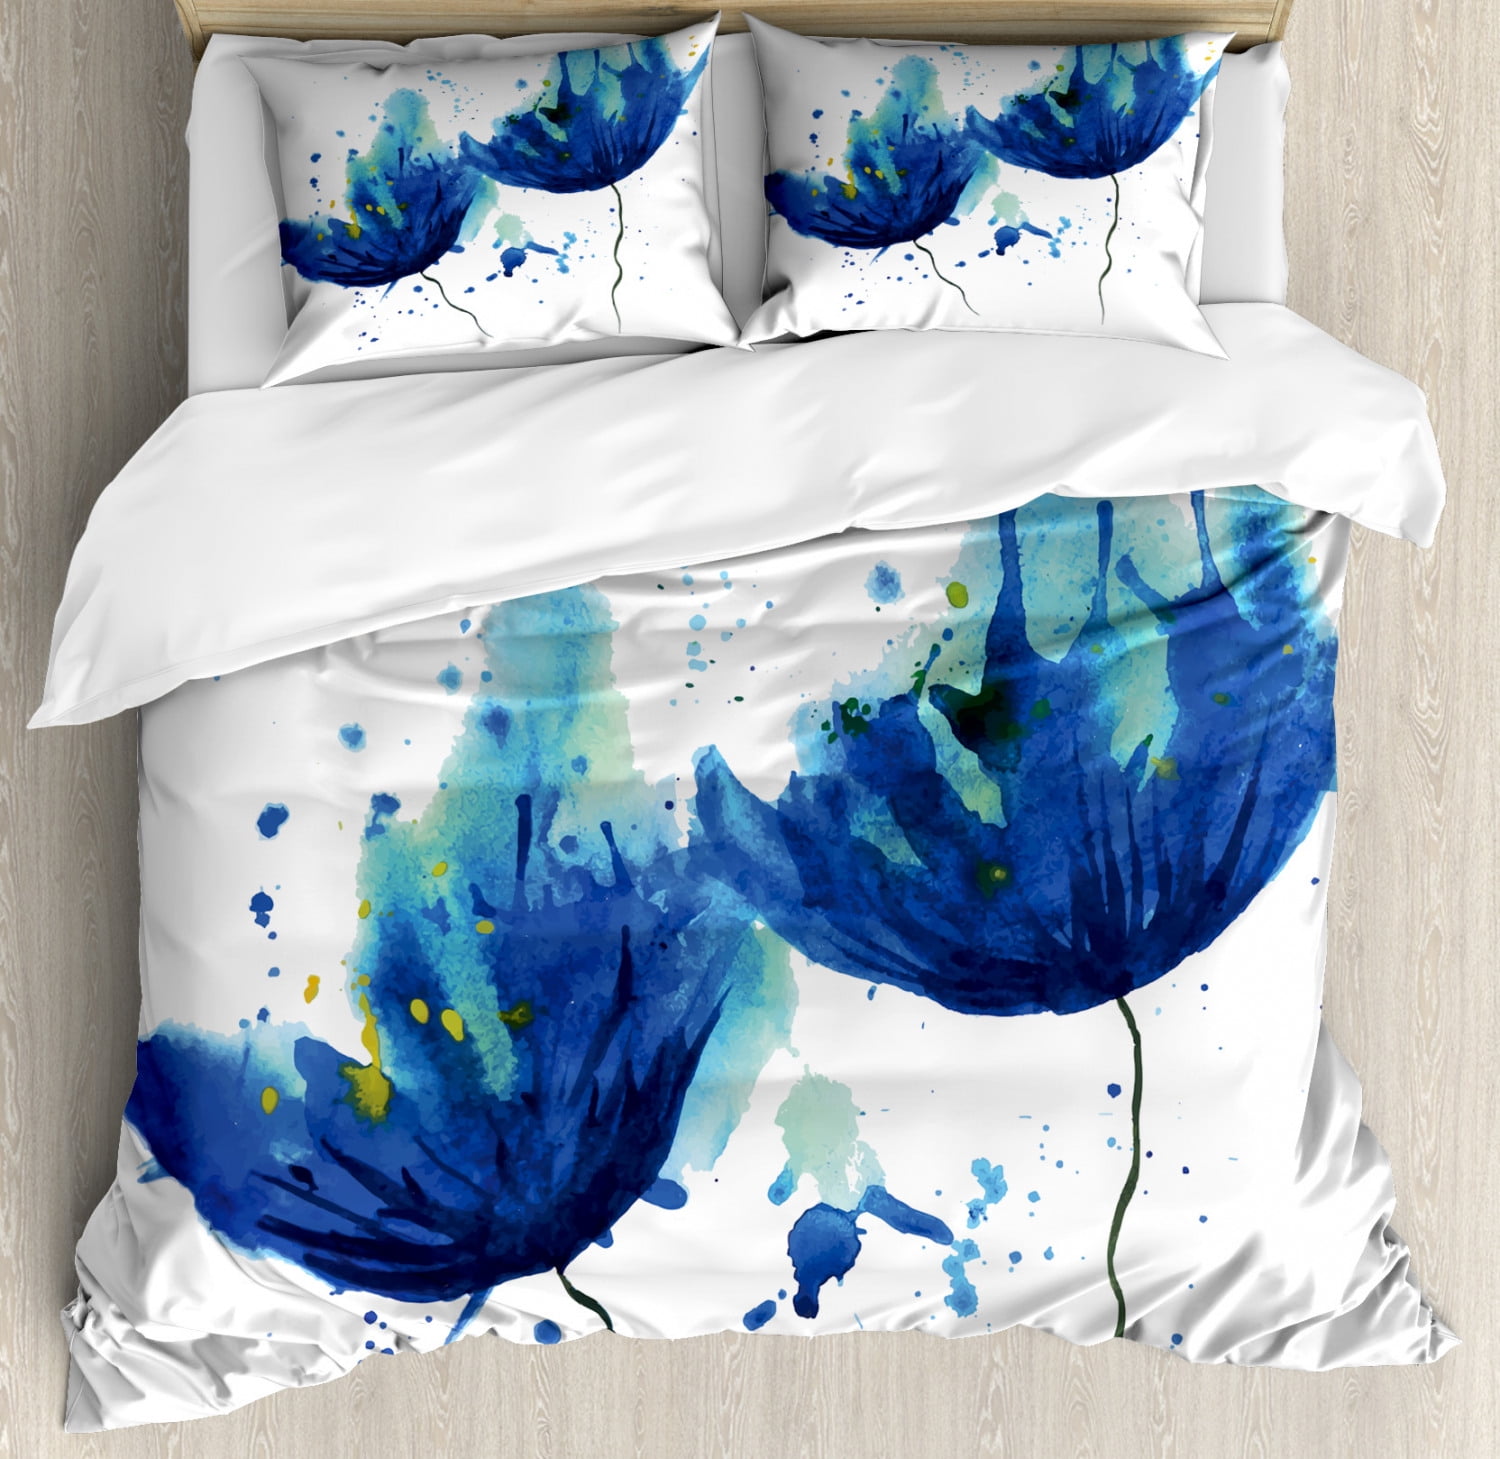 Blue Duvet Cover Set Watercolor Style Effect Floral Design